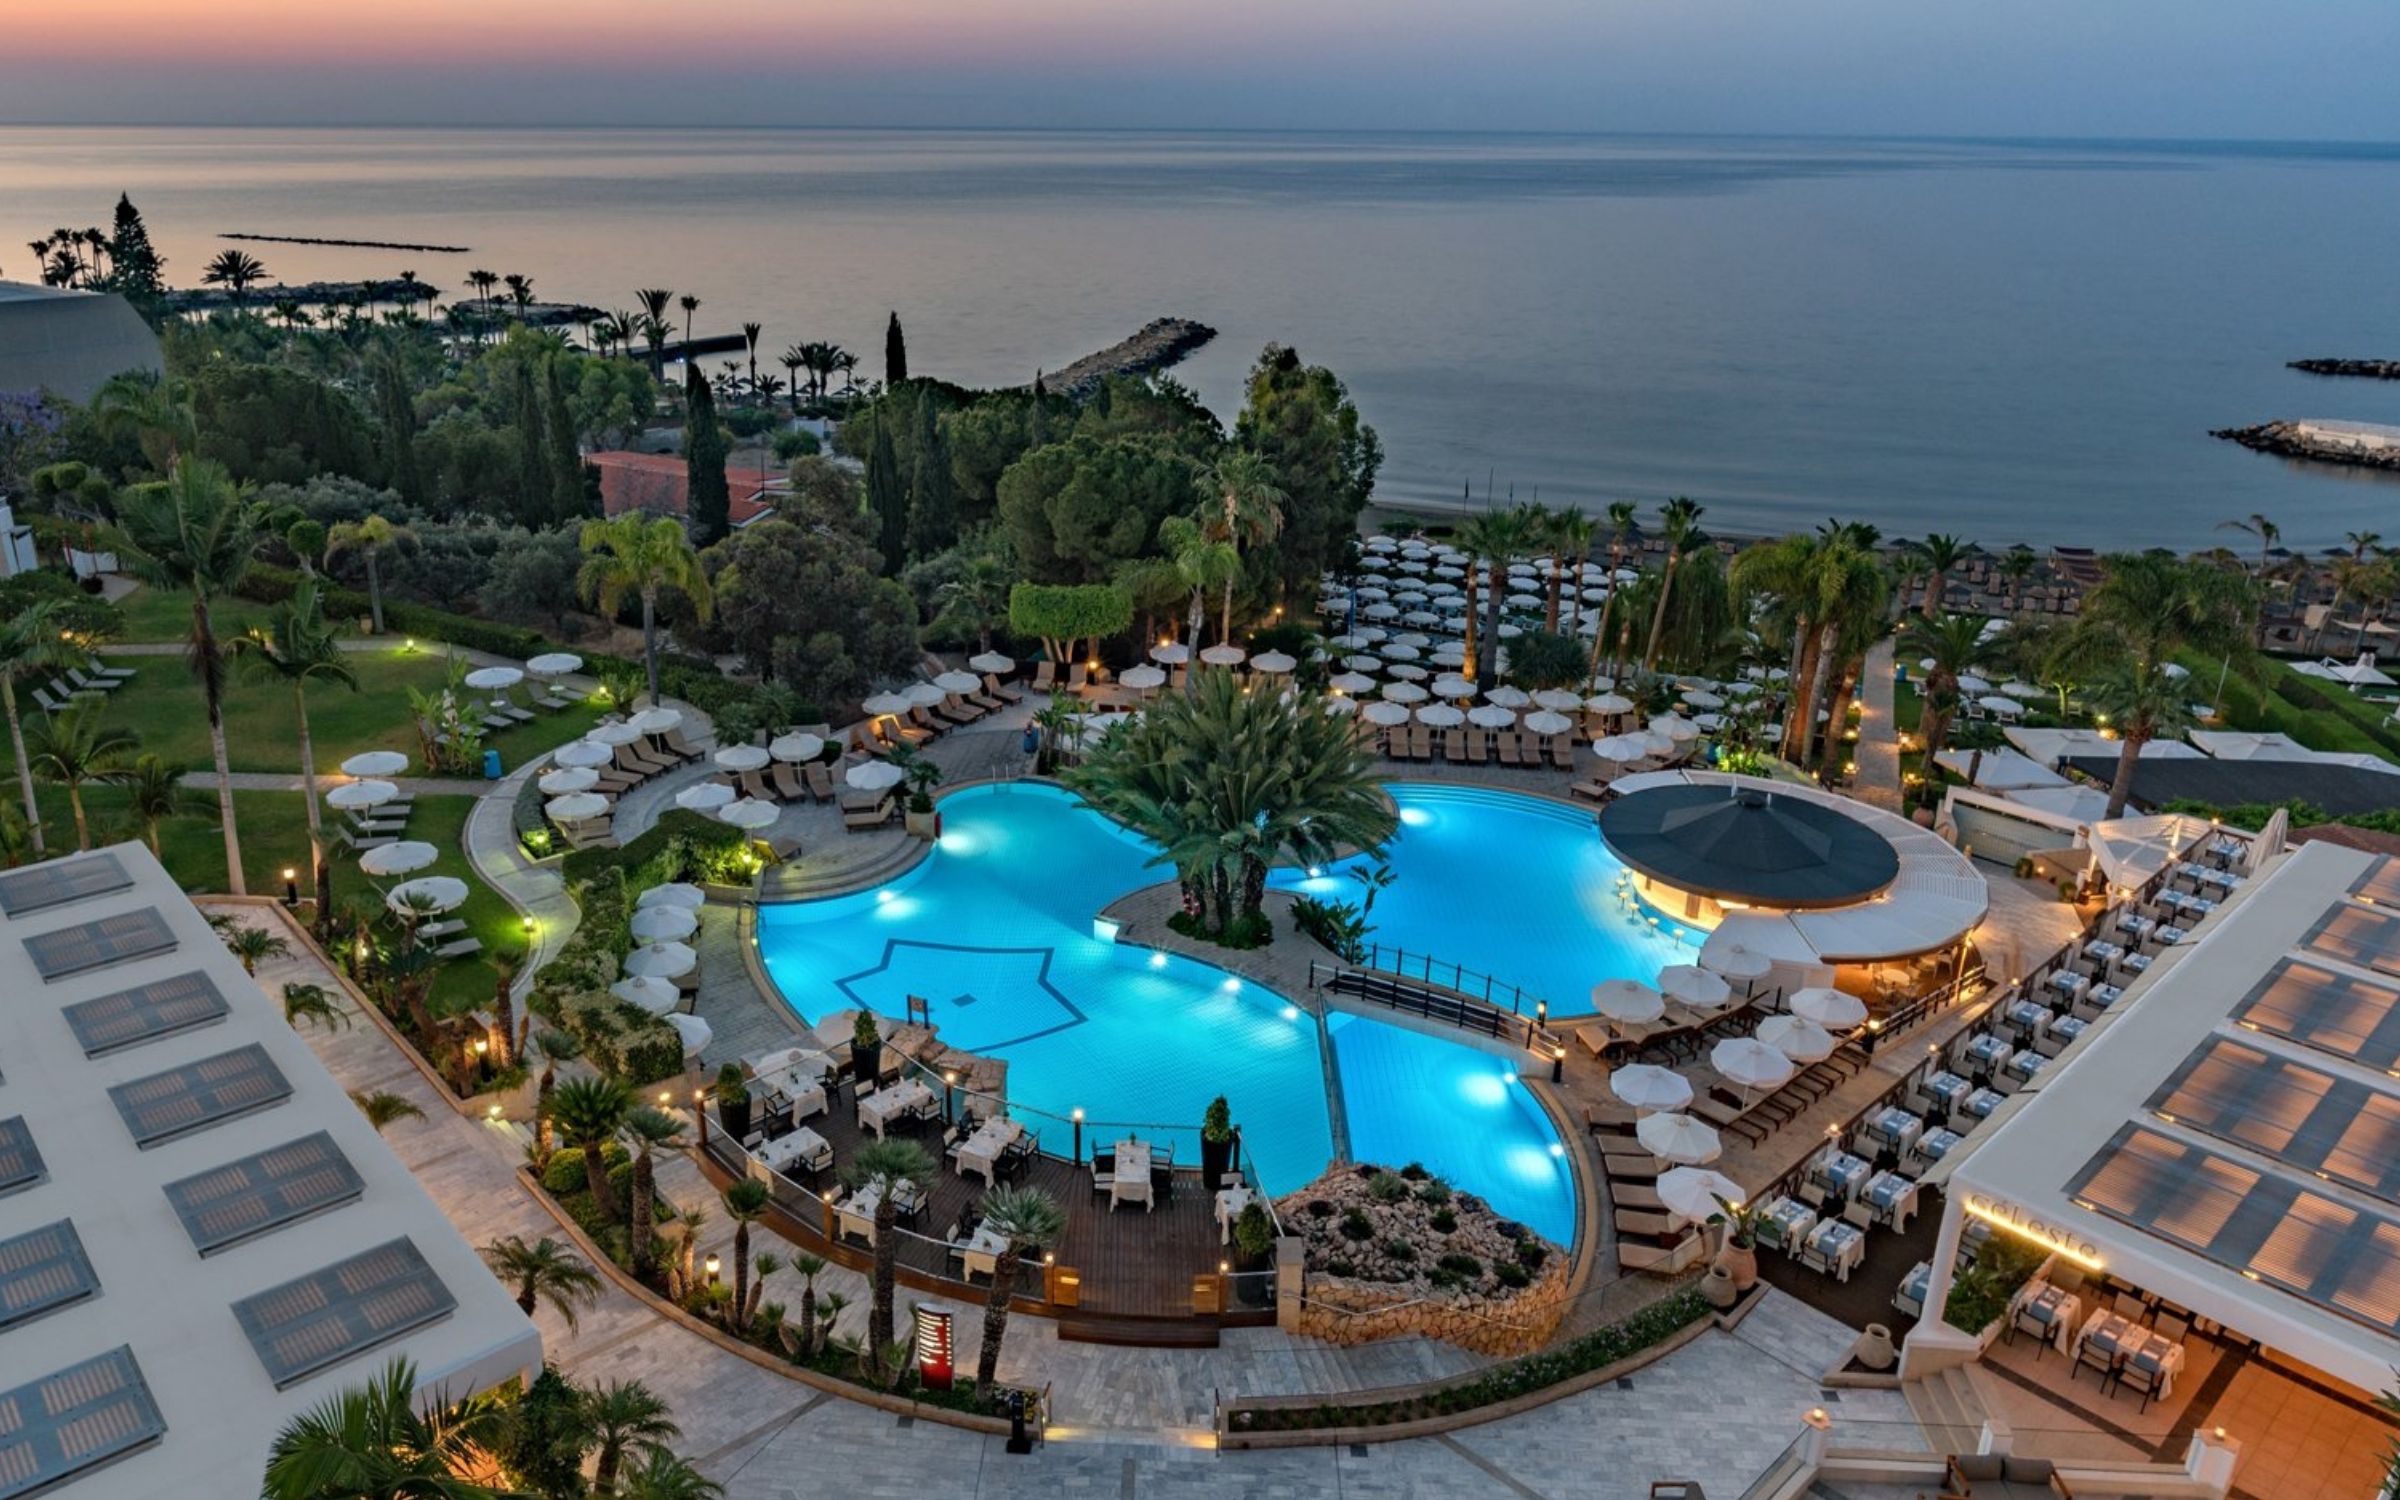 Mediterranean Beach Hotel in Cyprus